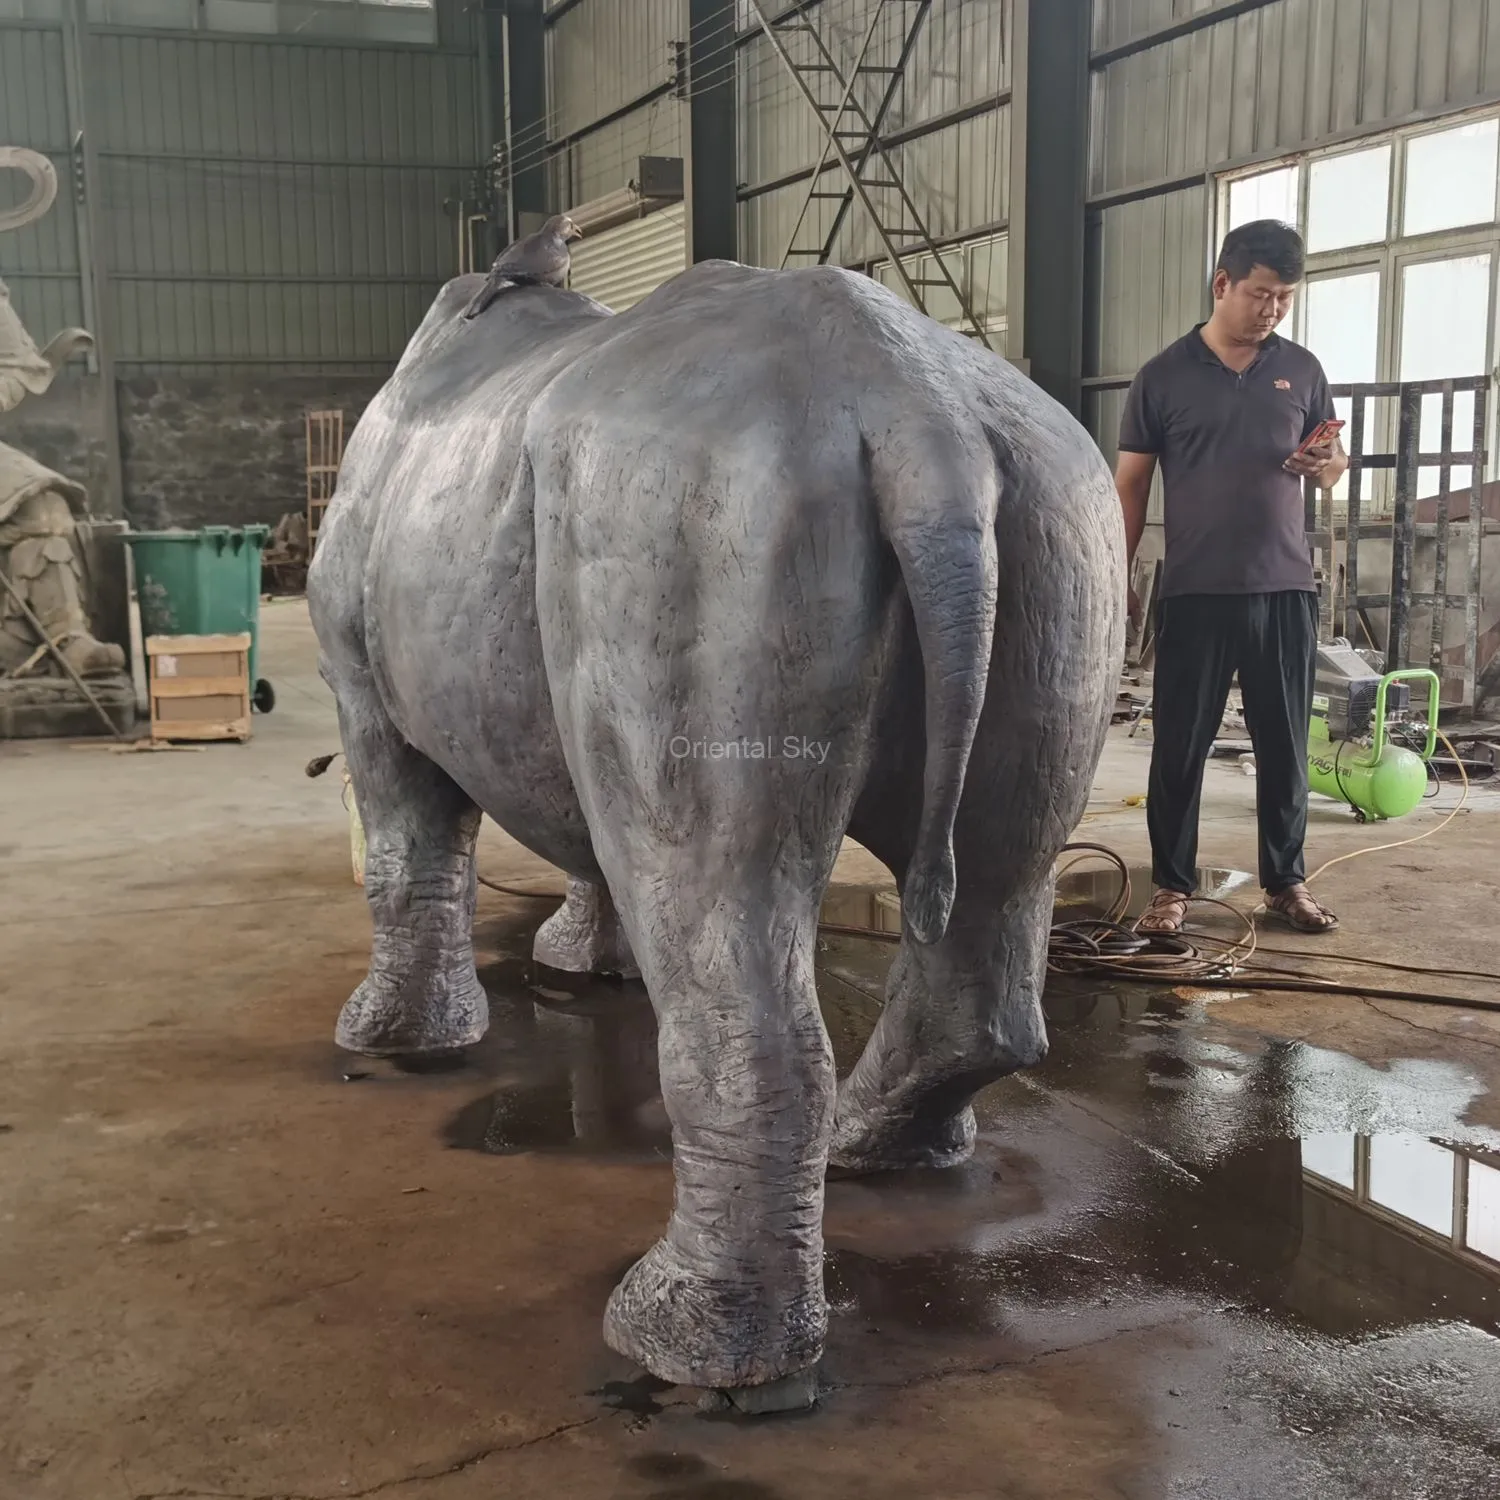 Grande statue extérieure de rhinocéros en bronze – un cadeau pour l’humanité et la nature